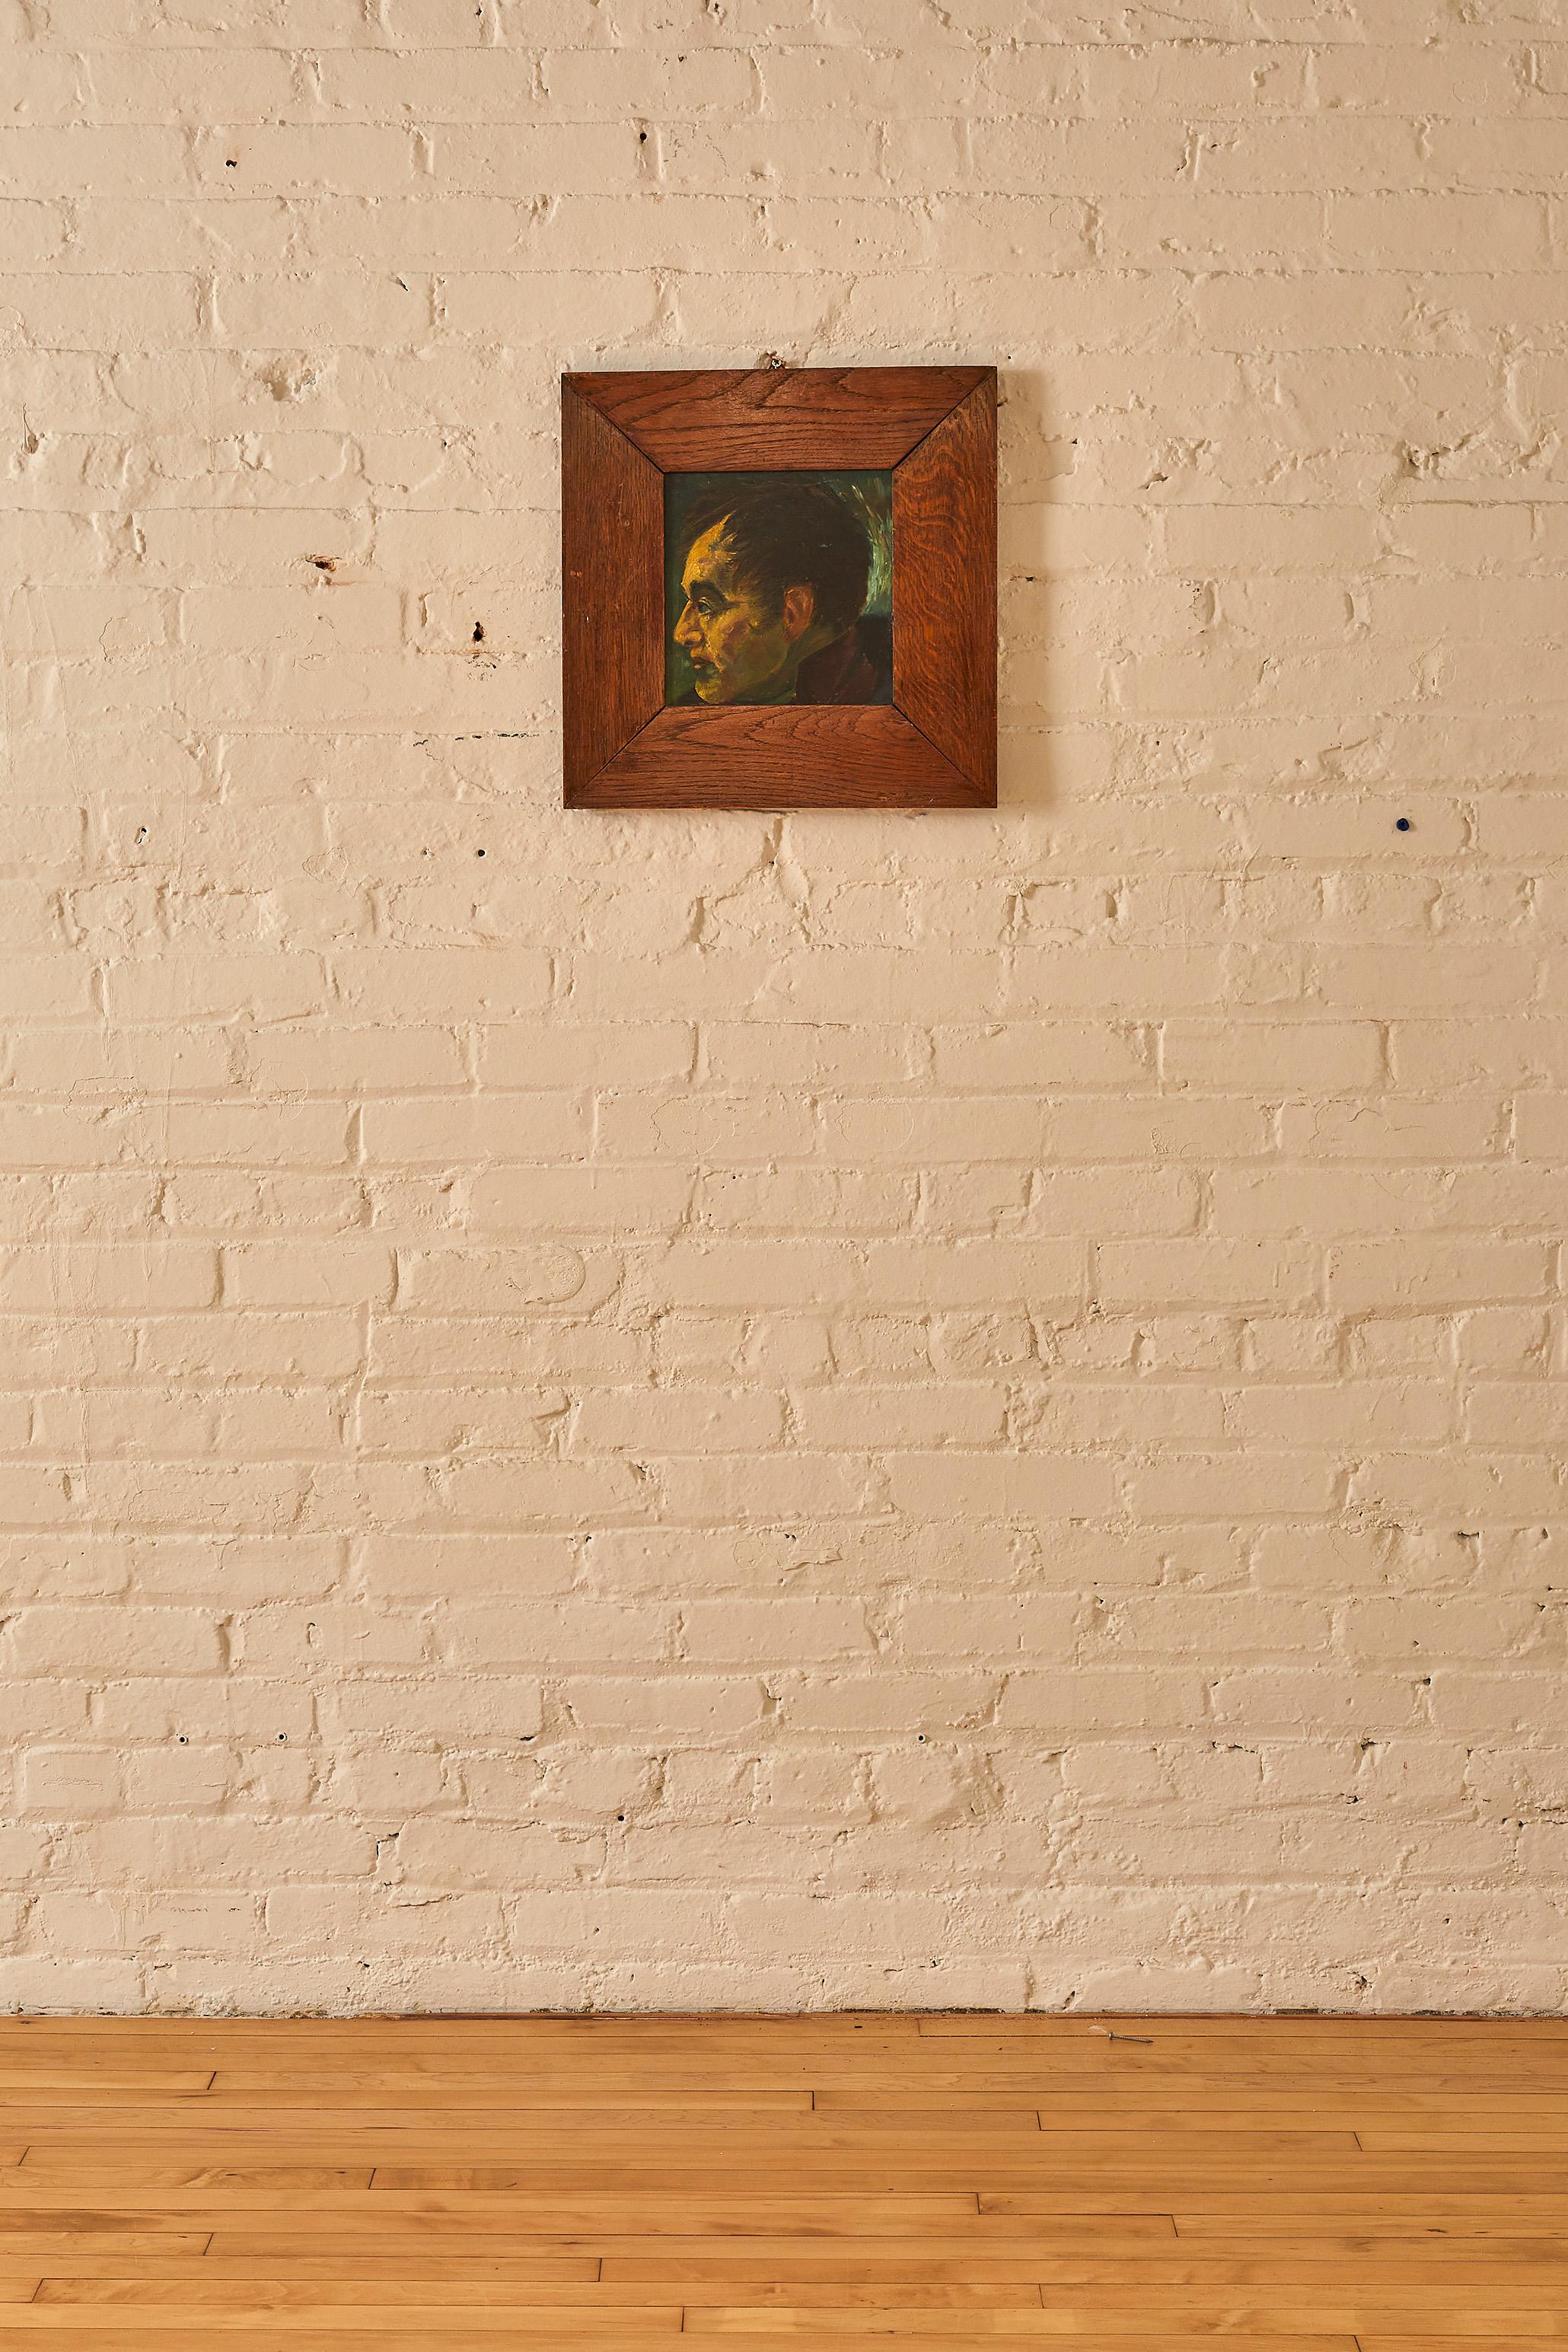 Italian Portrait in wooden frame. 

